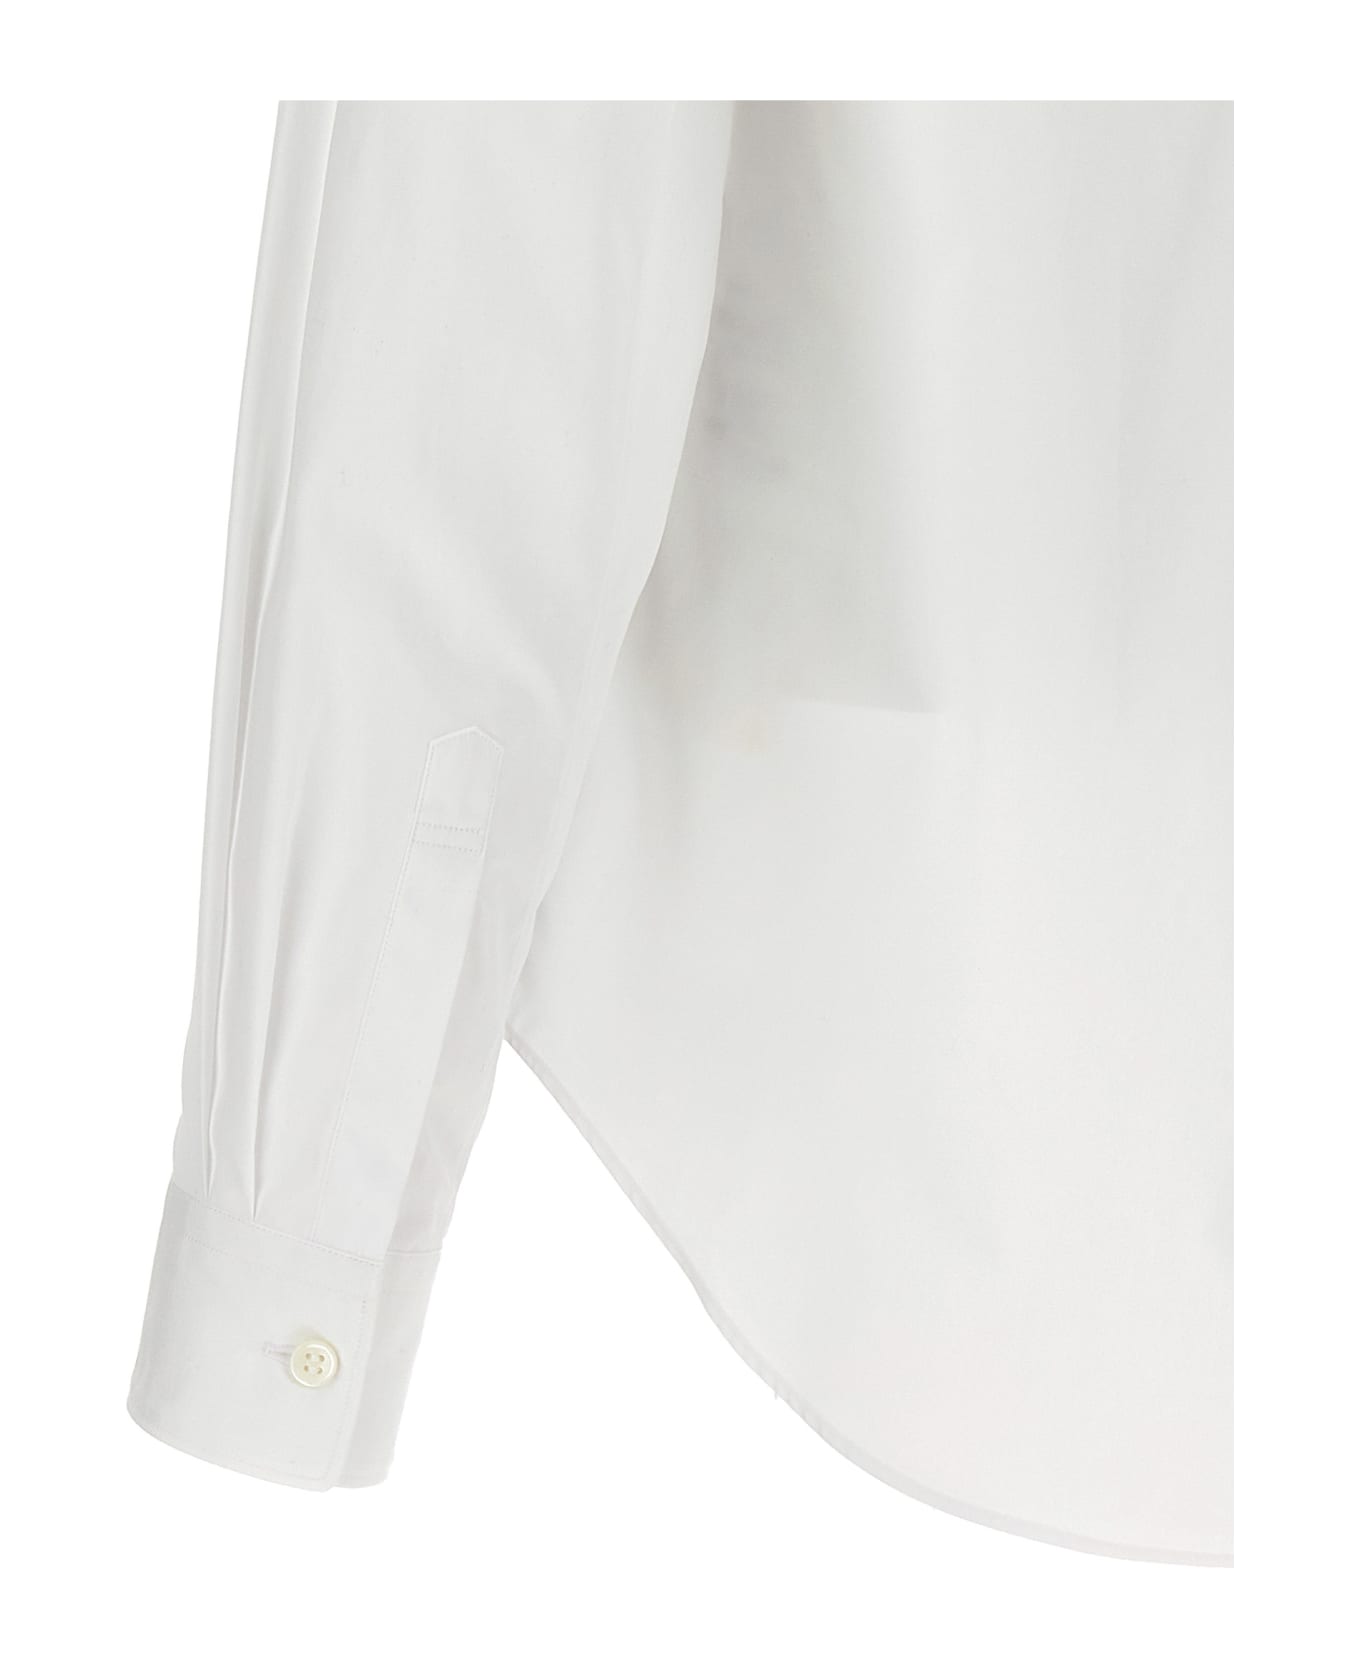 Black Comme des Garçons Cut-out Shirt - White シャツ